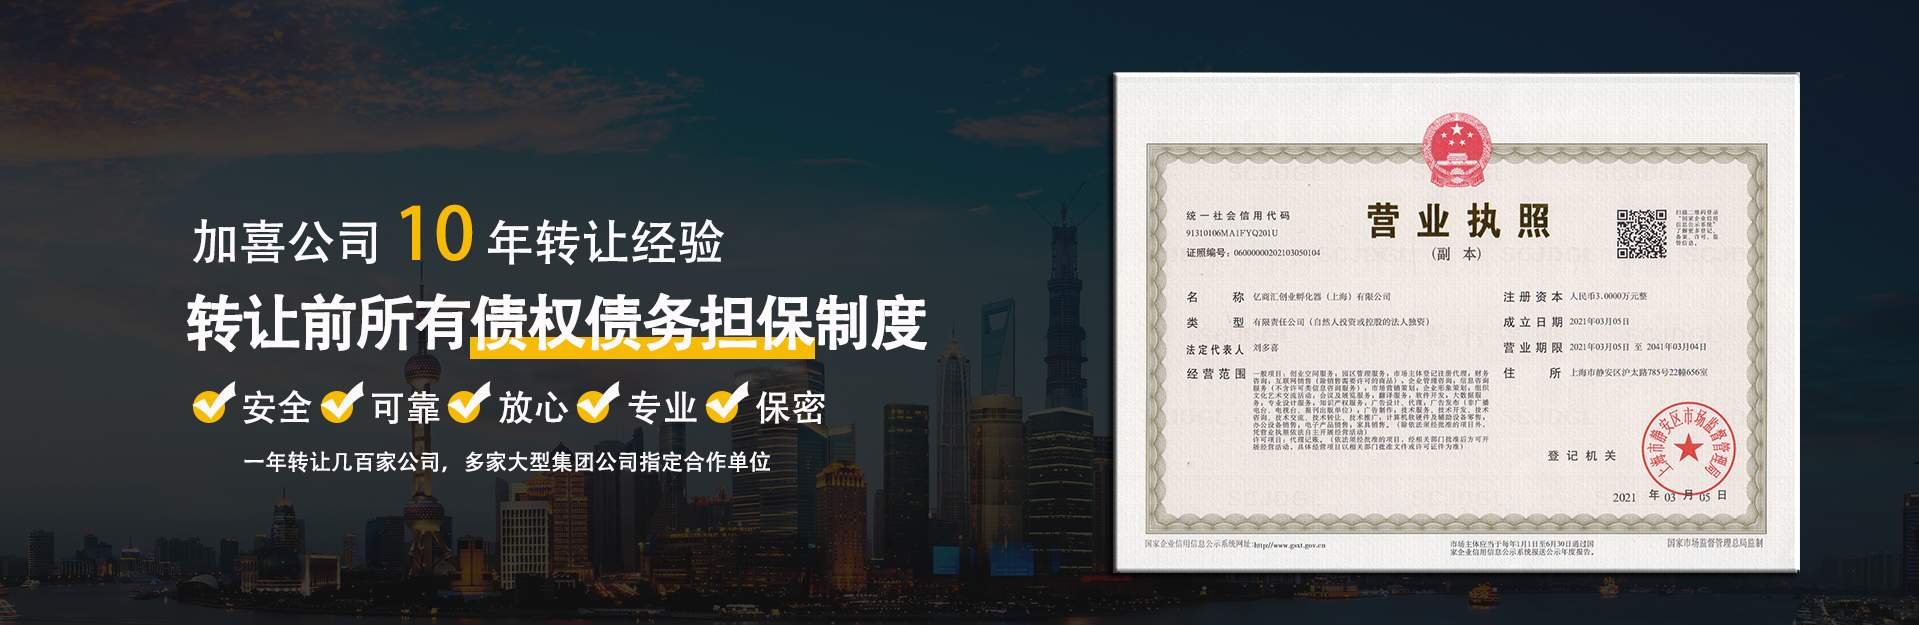 上海公司转让网|实业/贸易/科技/教育/建筑等闲置公司转让平台